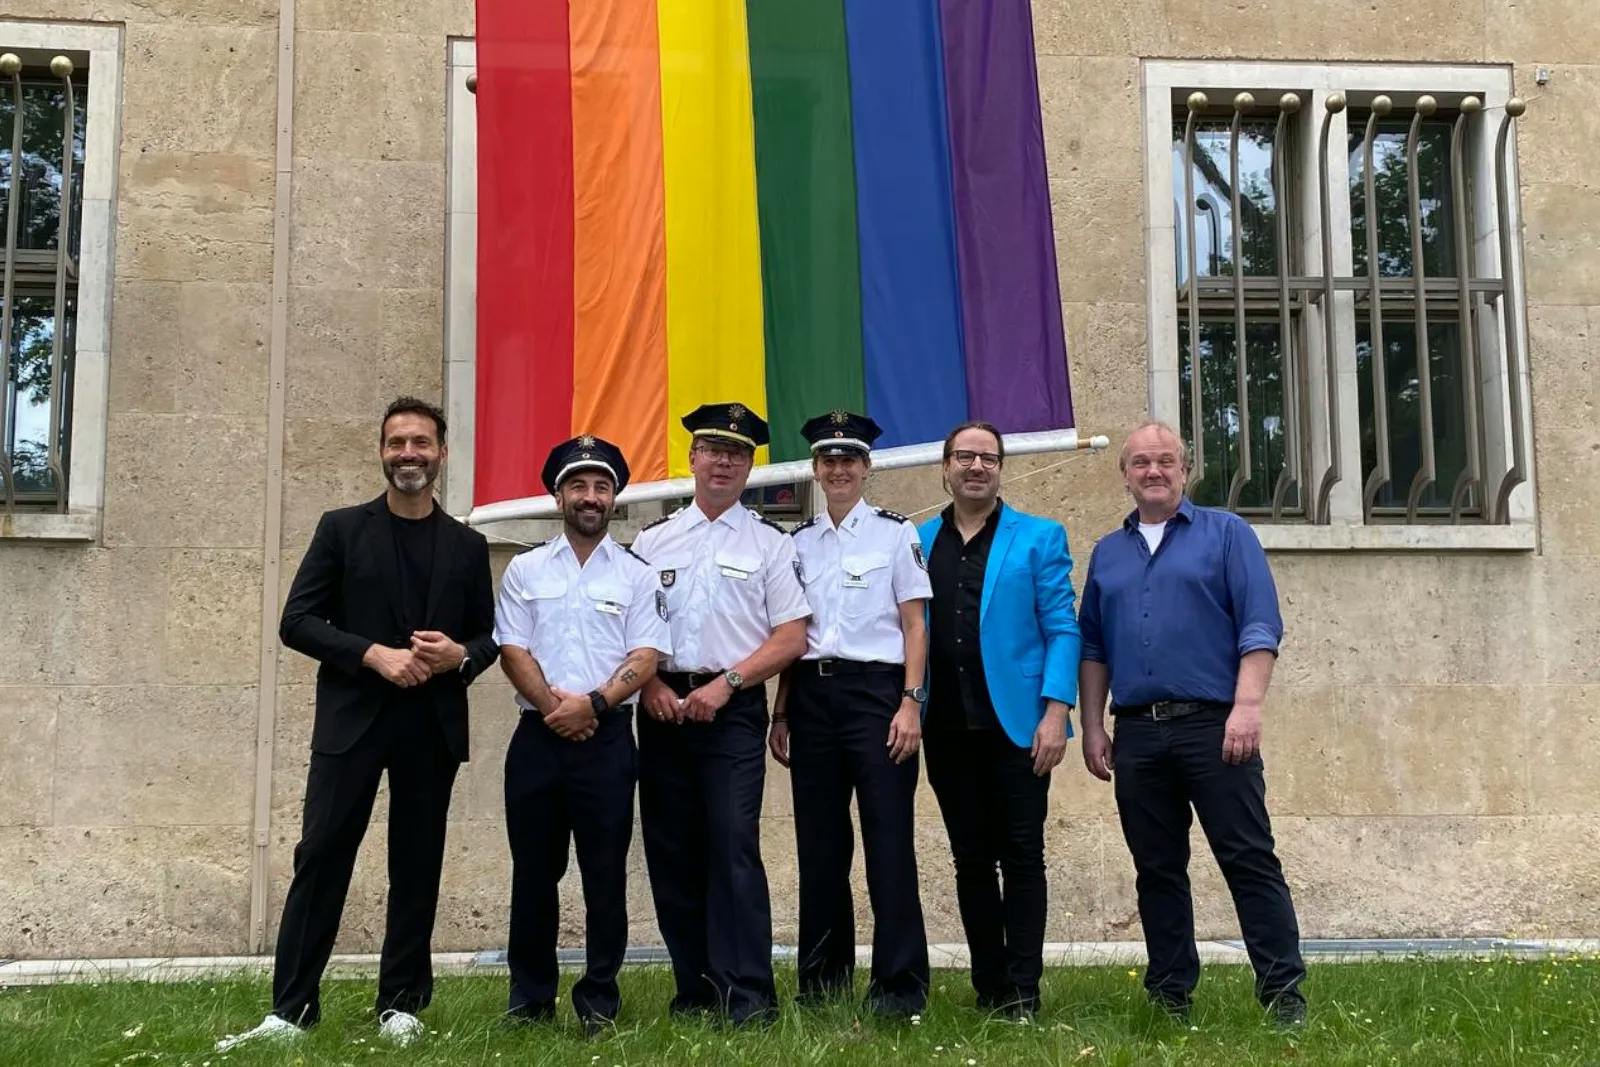 Polizei Berlin hisst Regenbogenflagge und erntet Kritik